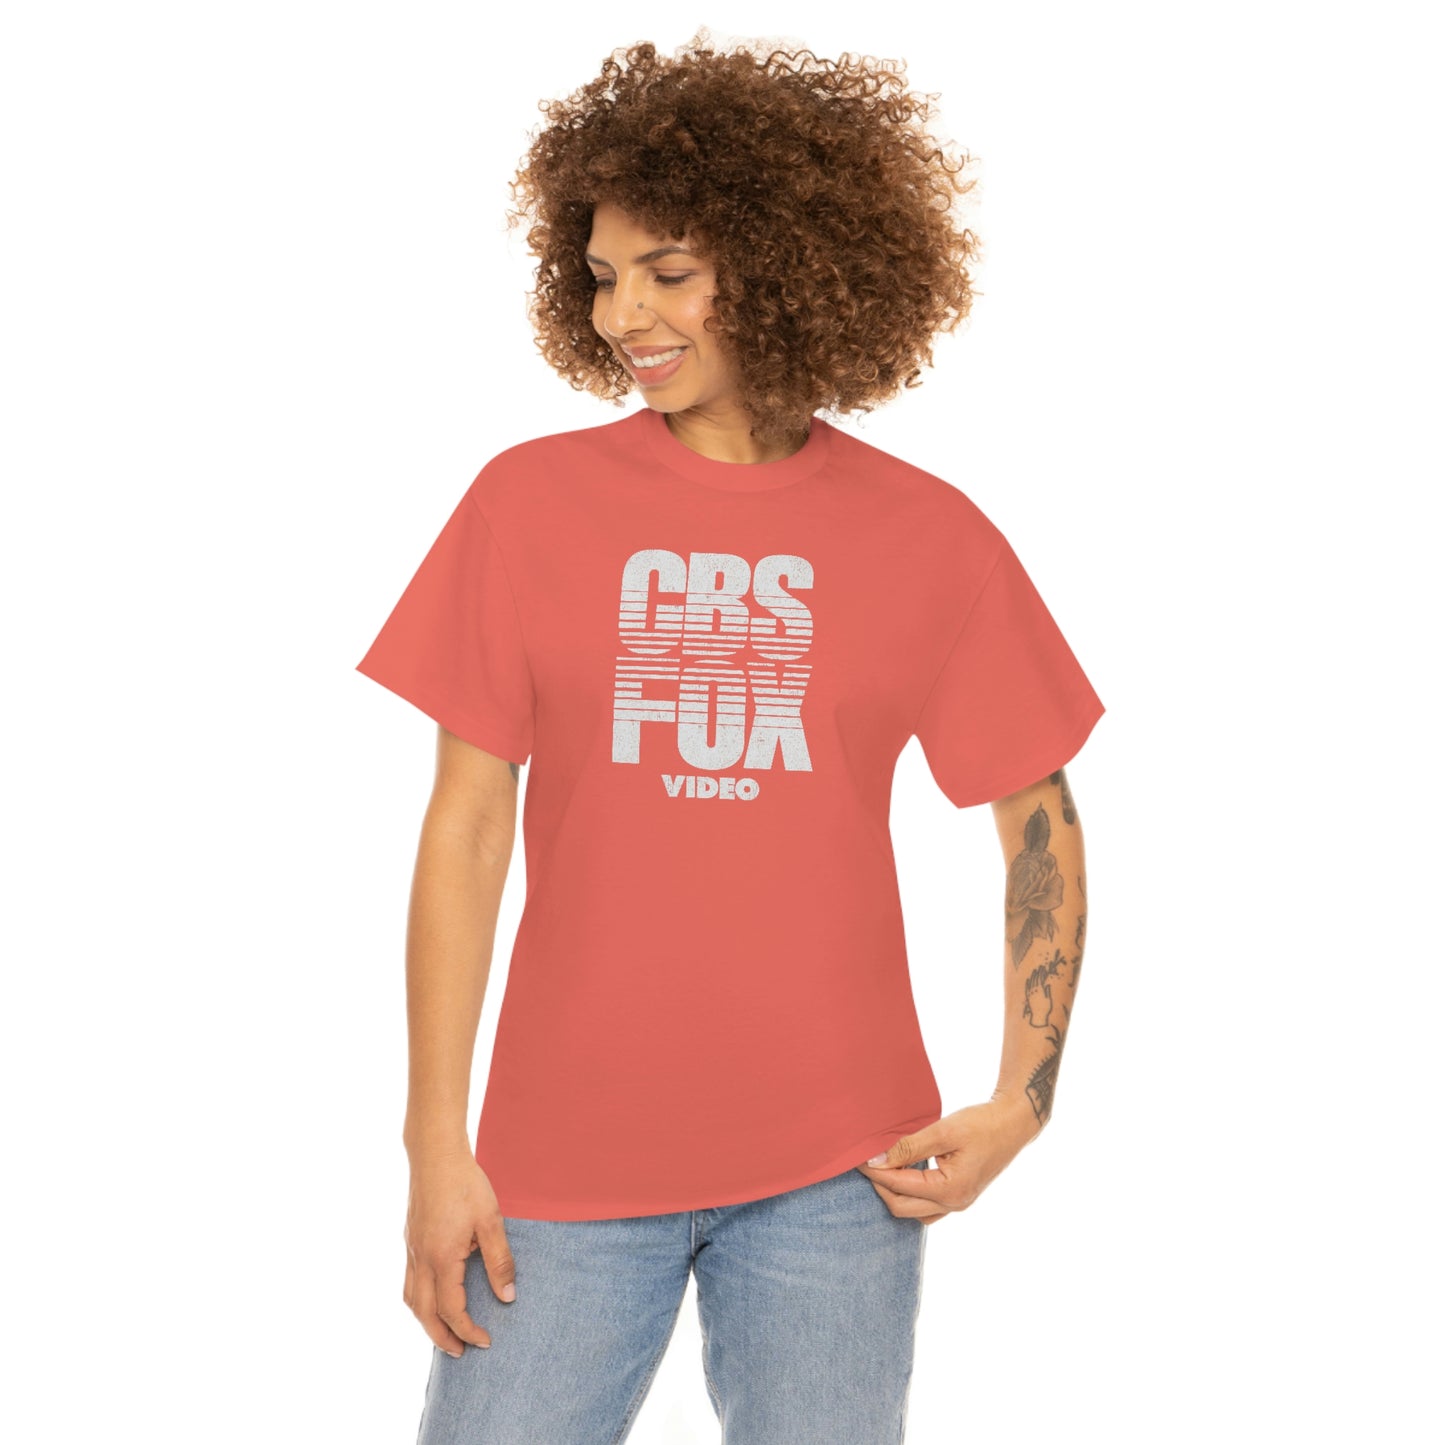 CBS Fox Video T-Shirt